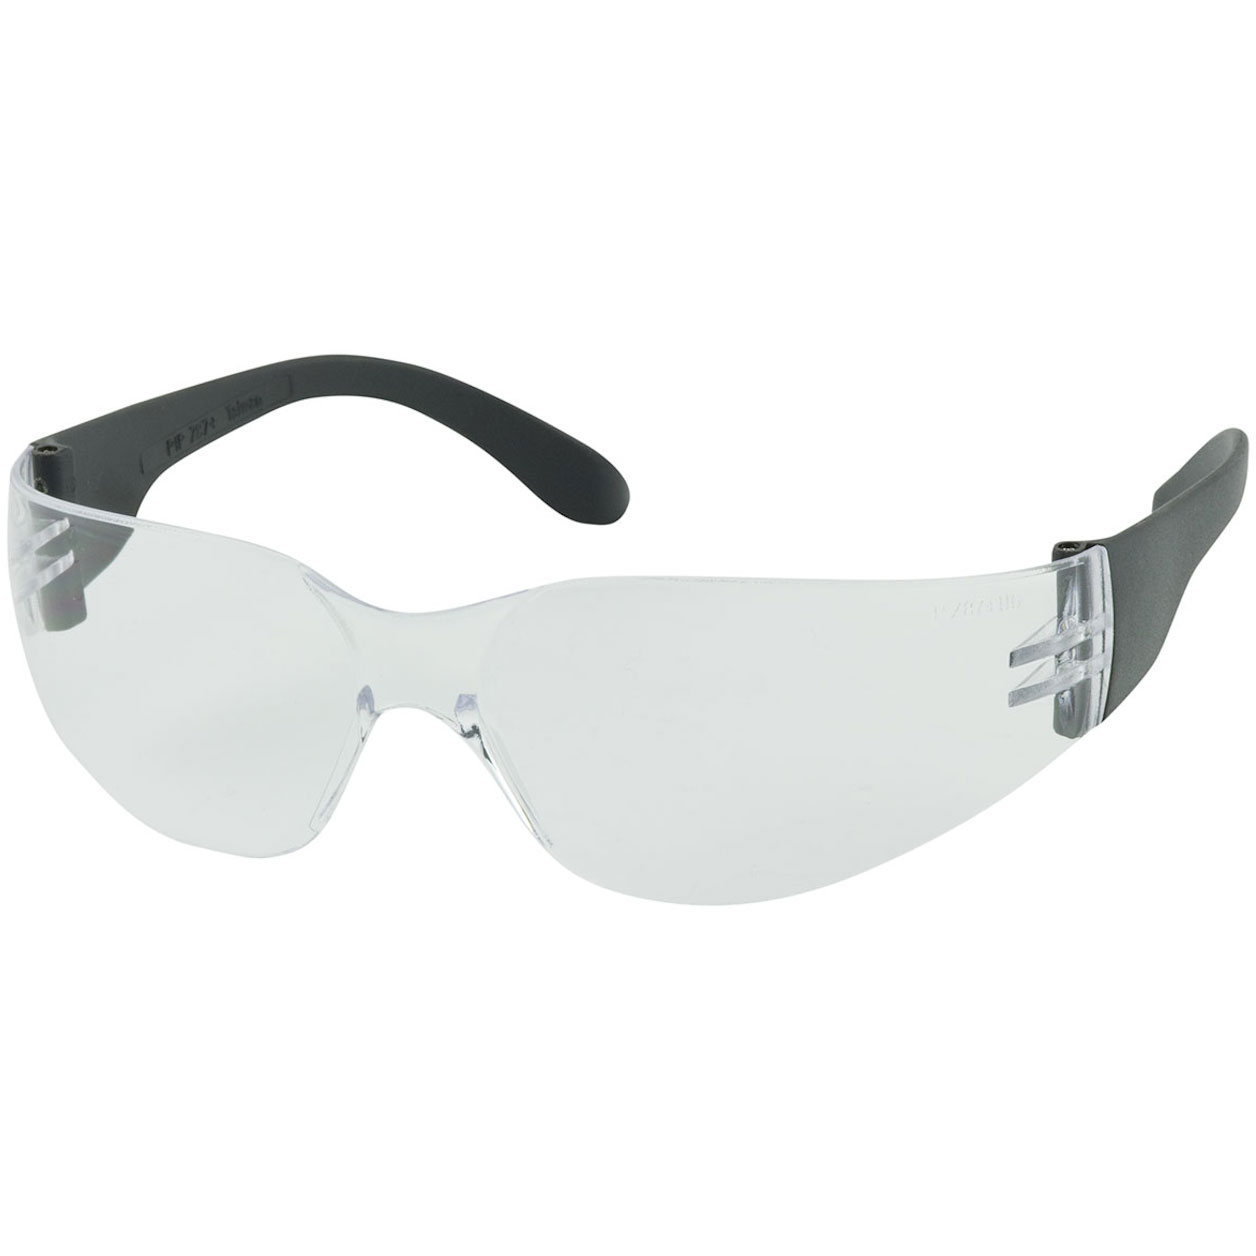 PIP Zenon Z12 Rimless Safety Glasses